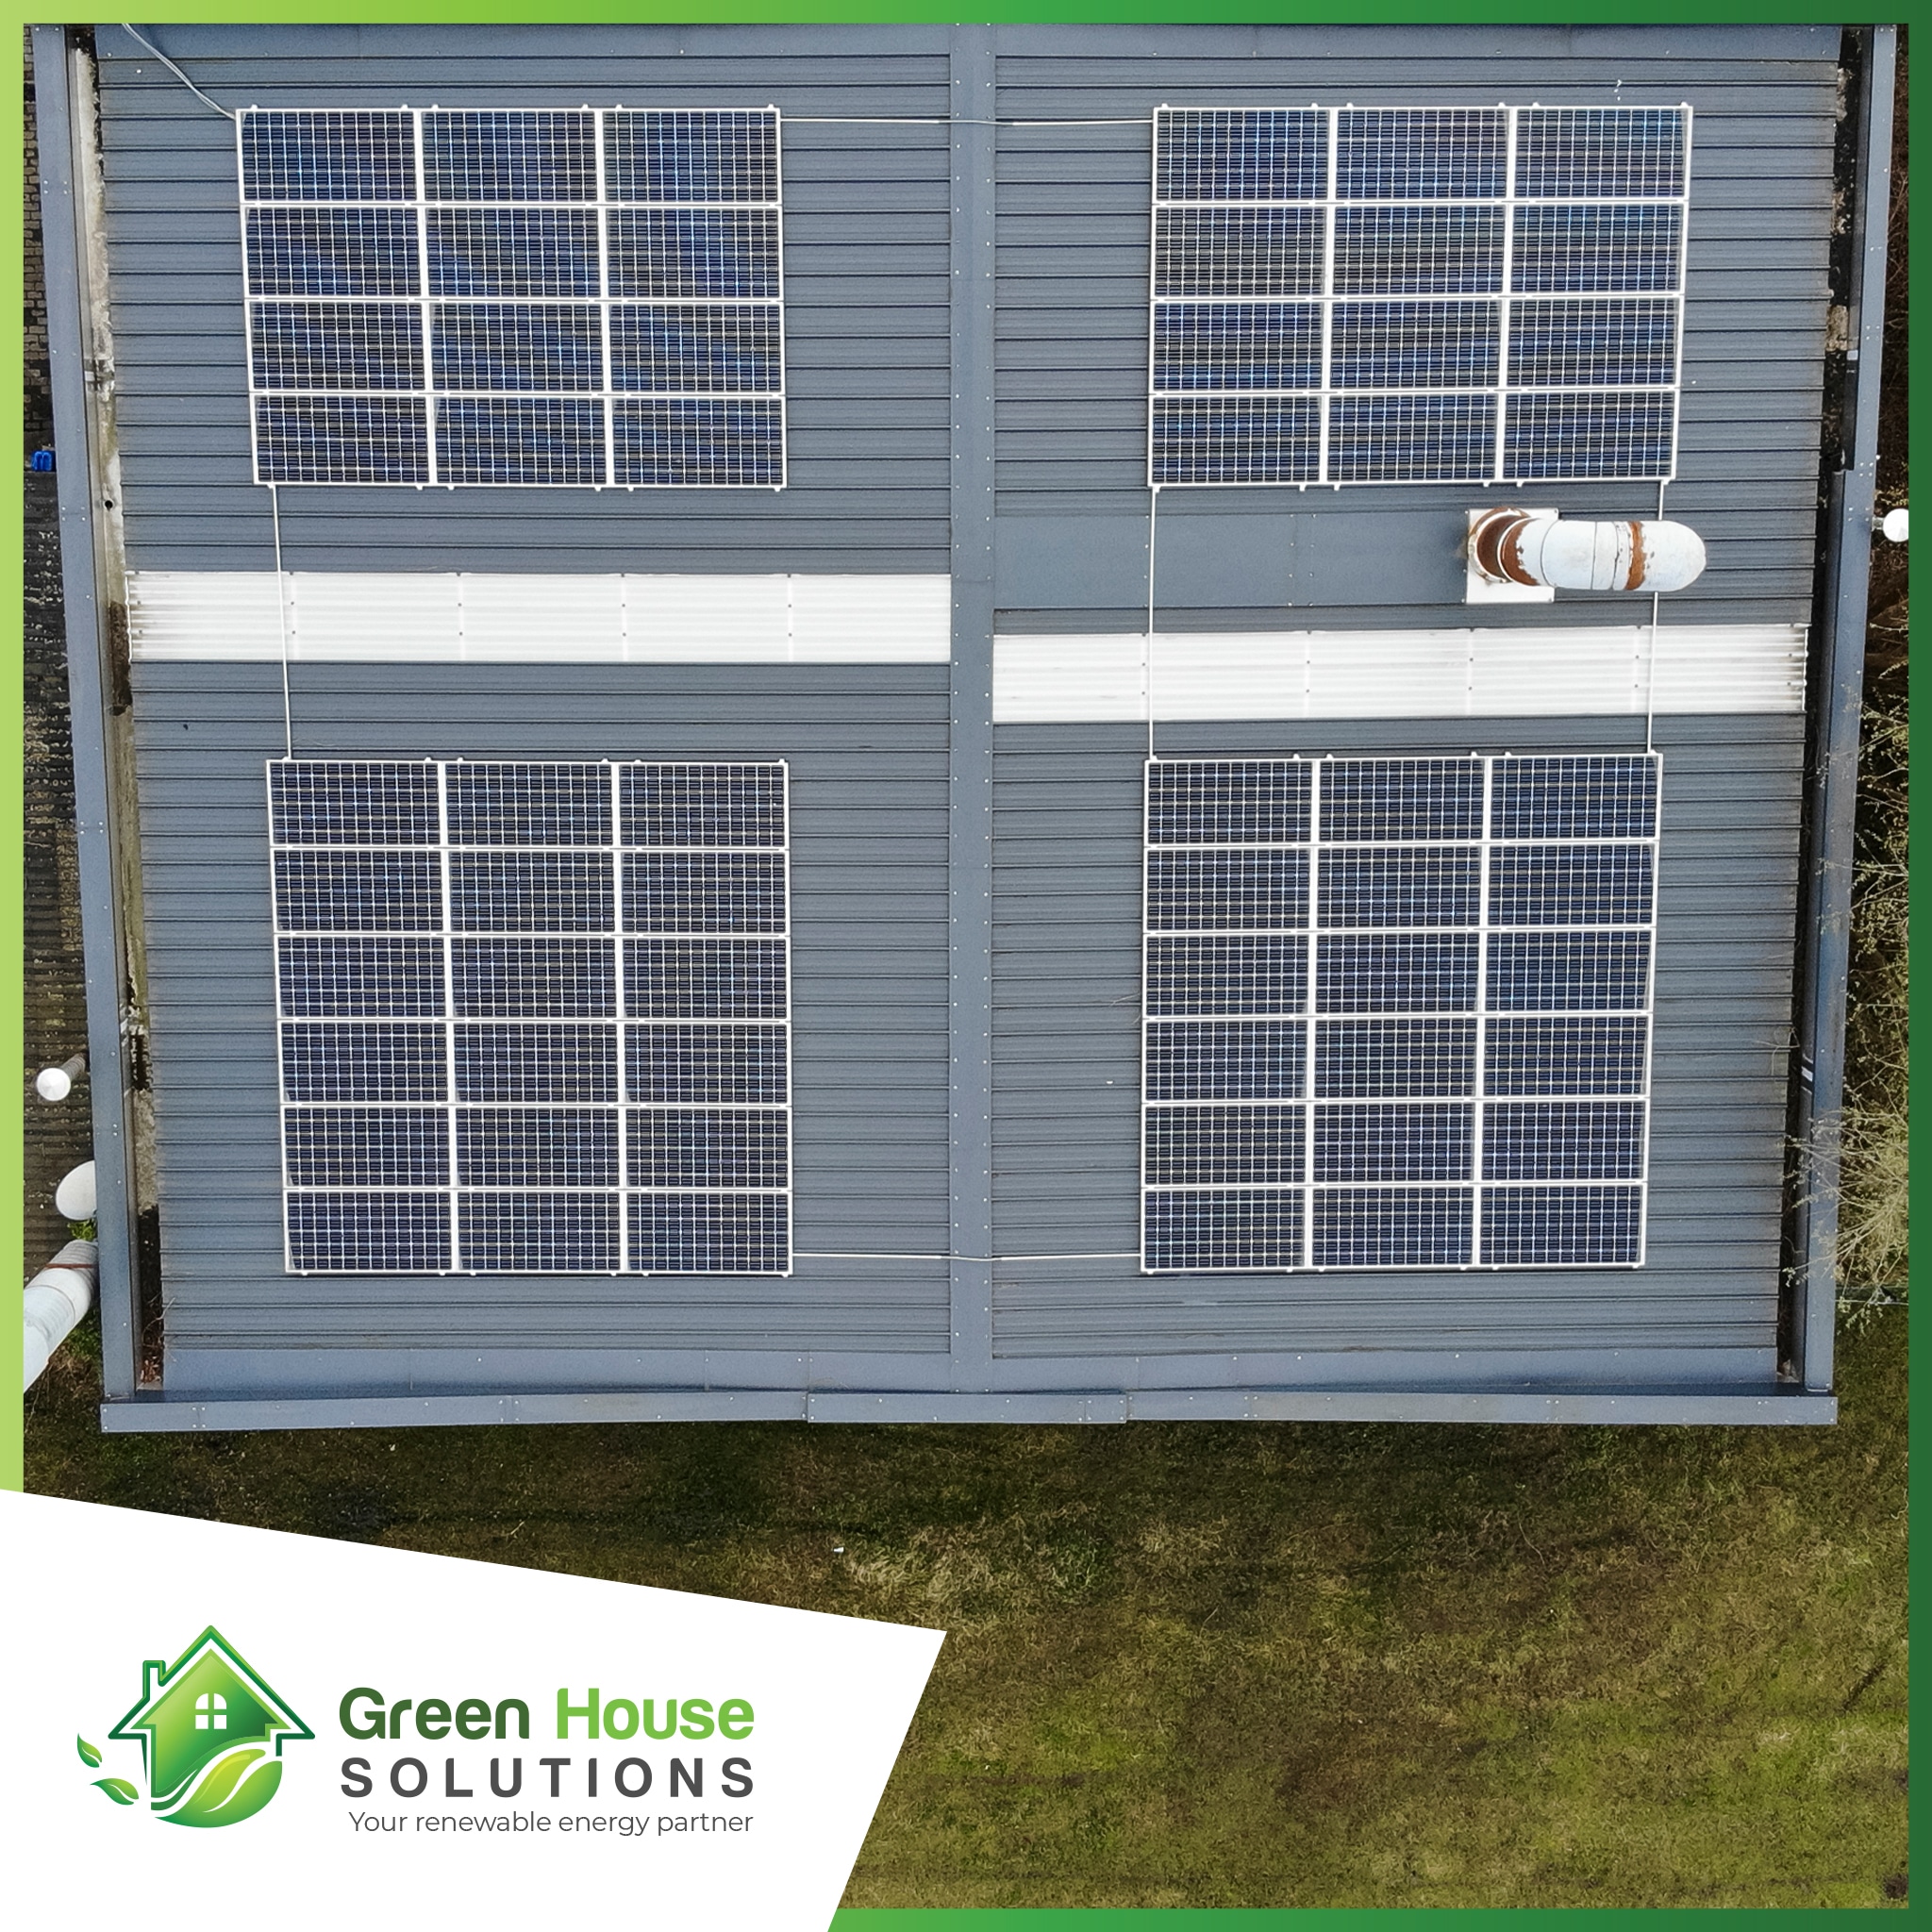 Green House Solutions zonnepanelen plaatsen installeren of kopen 00045